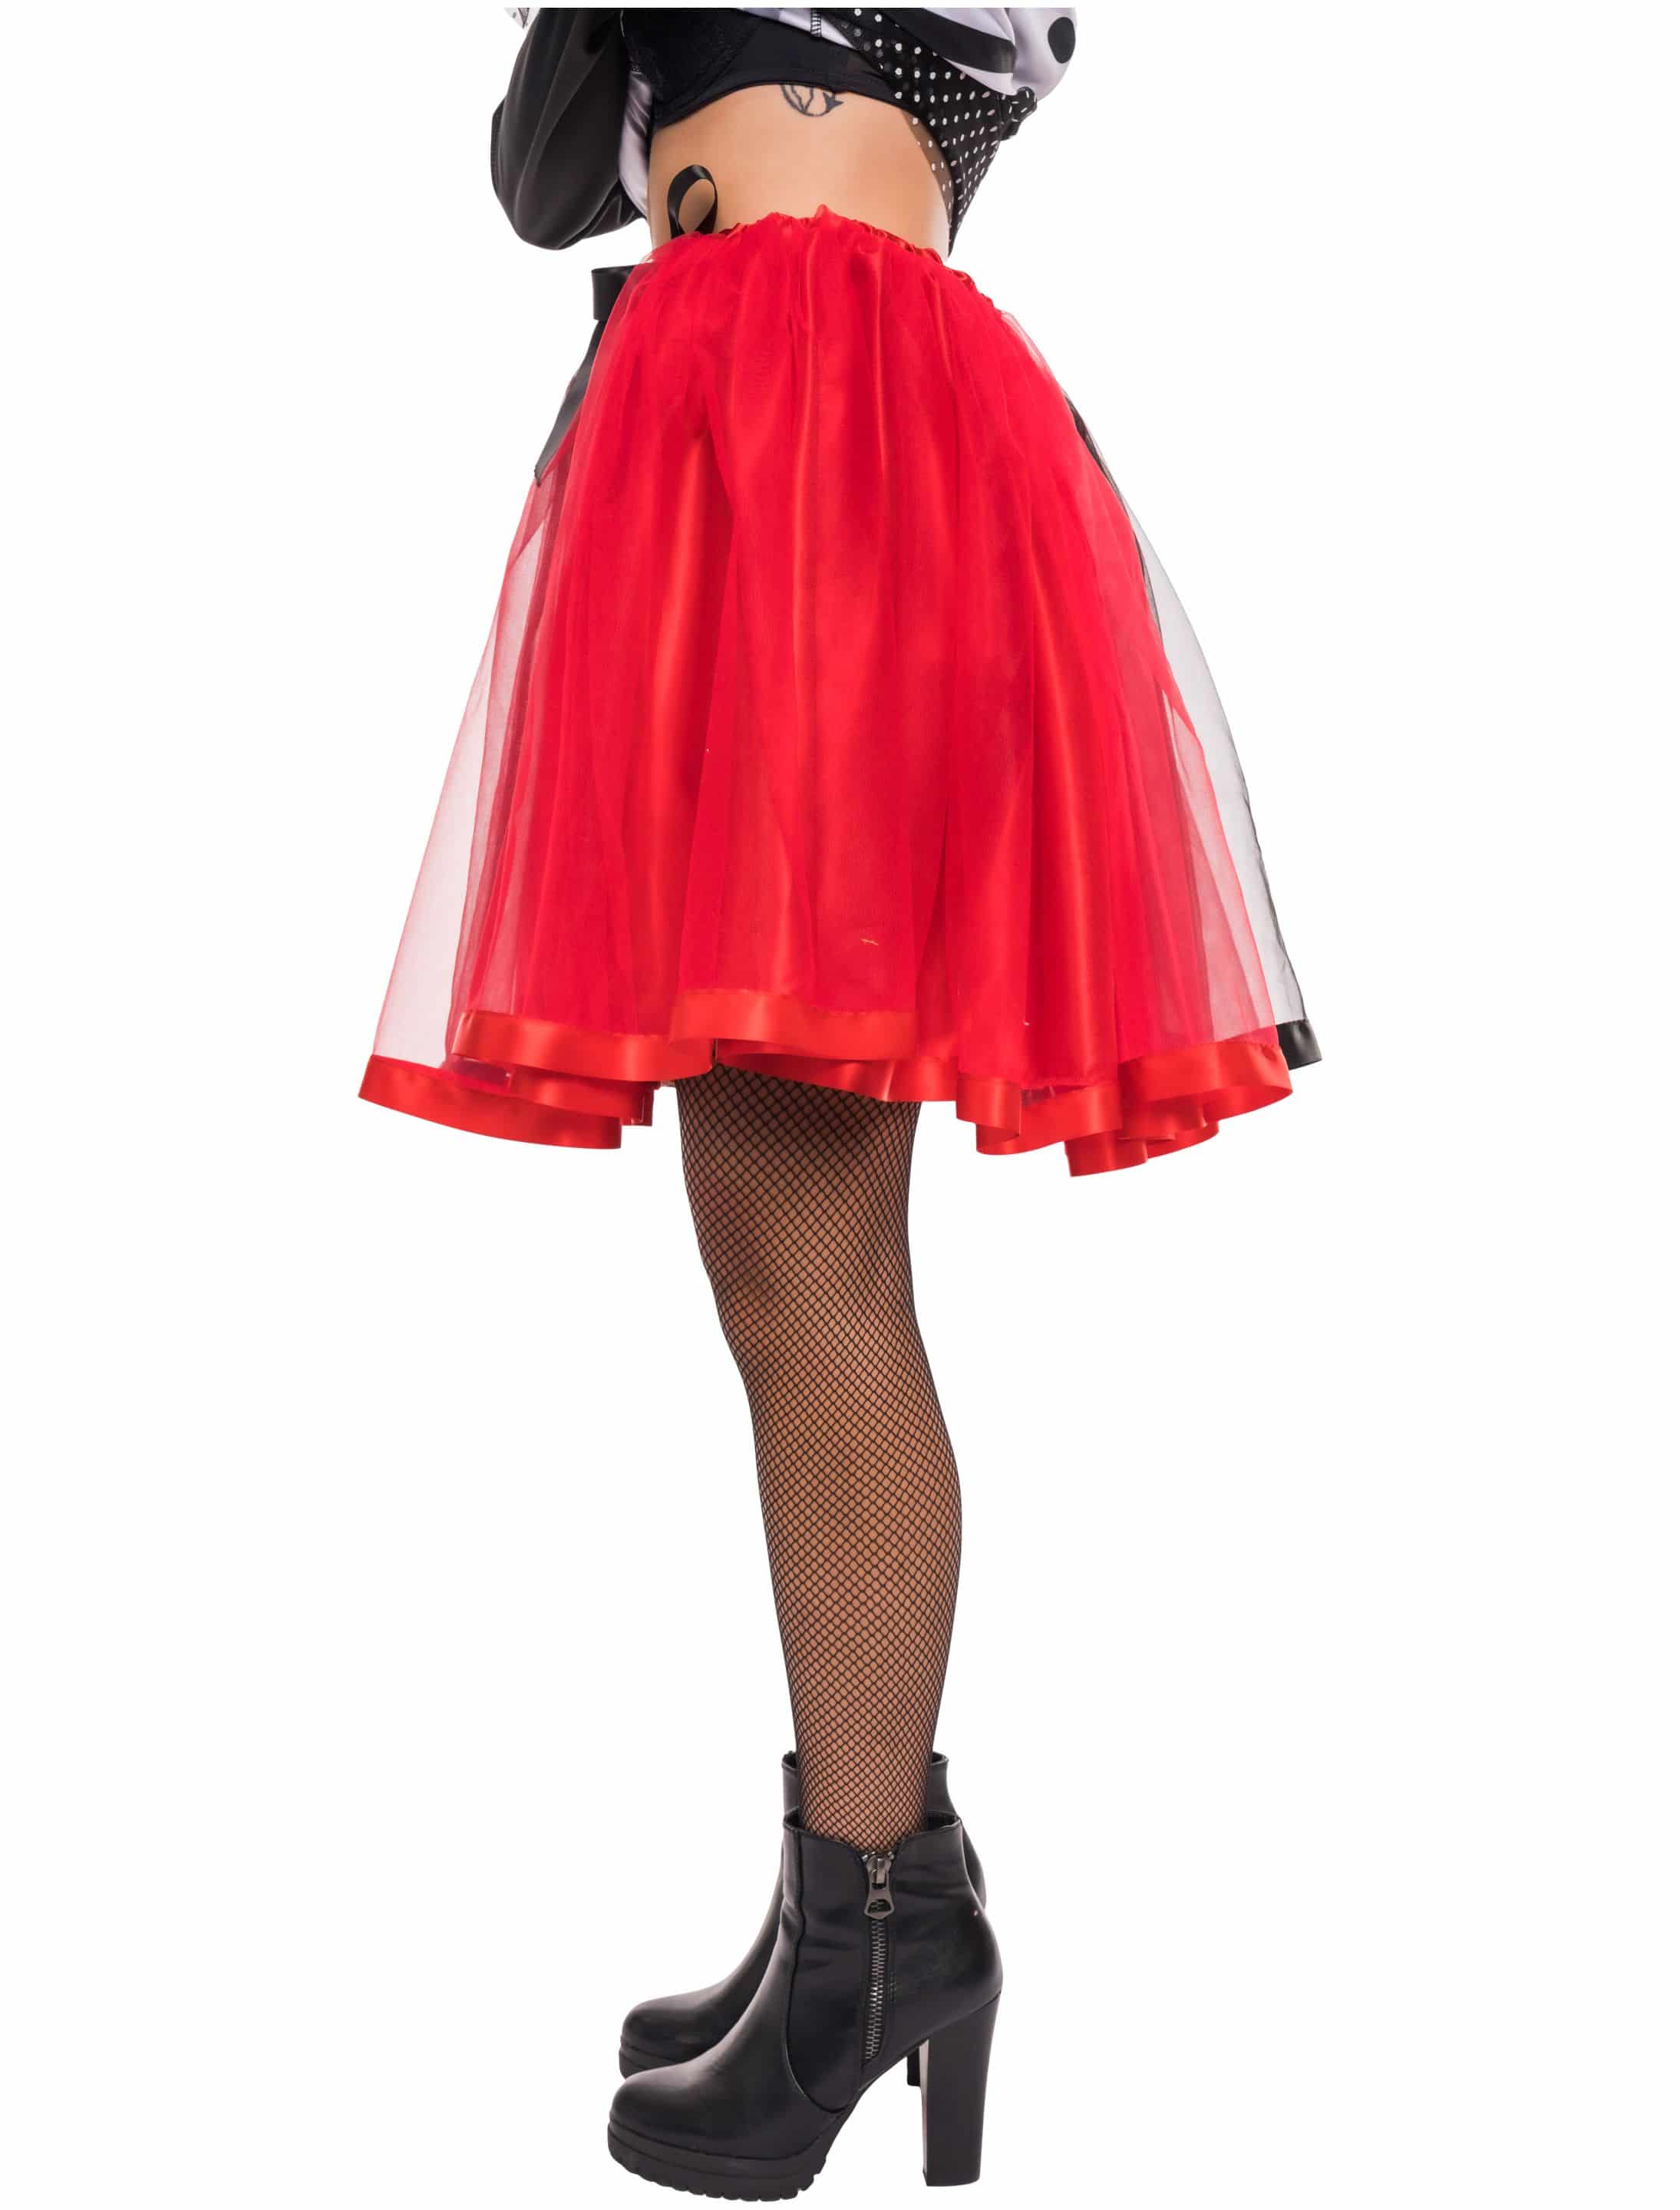 Petticoat Damen schwarz/rot one size